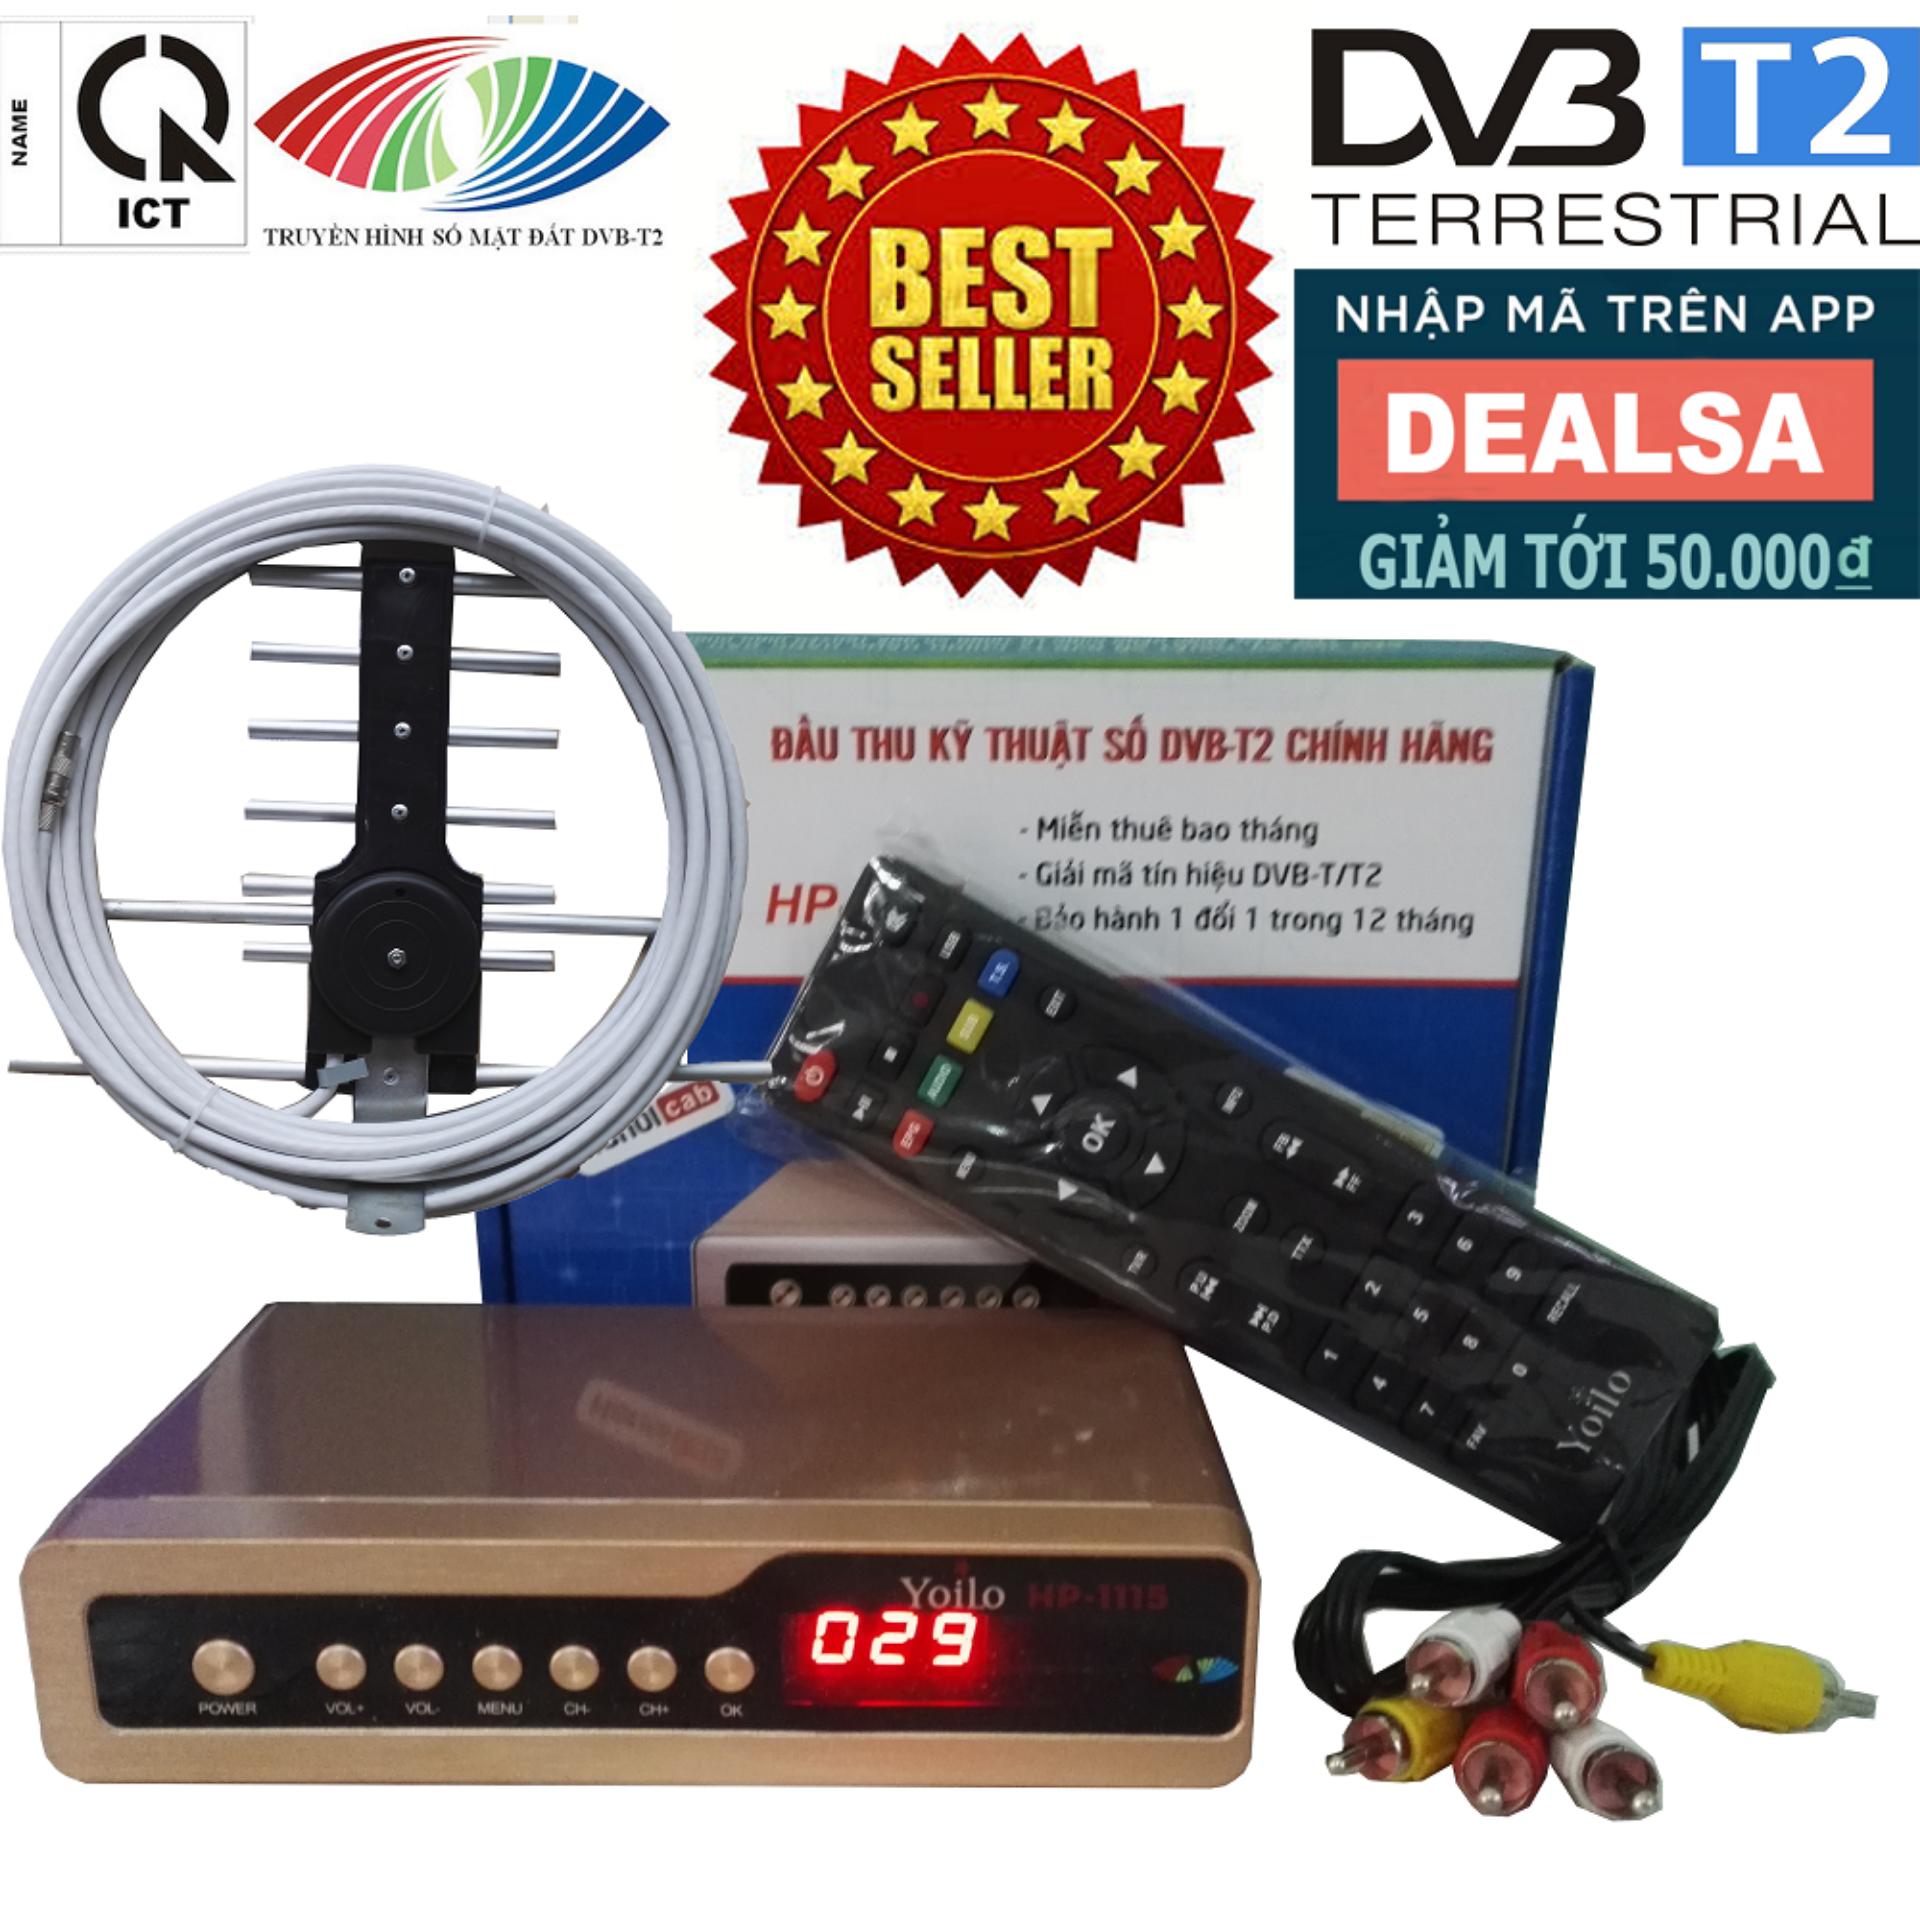 Bộ đầu thu kỹ thuật số DVB-T2/HP-1115 kèm Bộ Anten thông minh + 12m dây cáp đồng trục